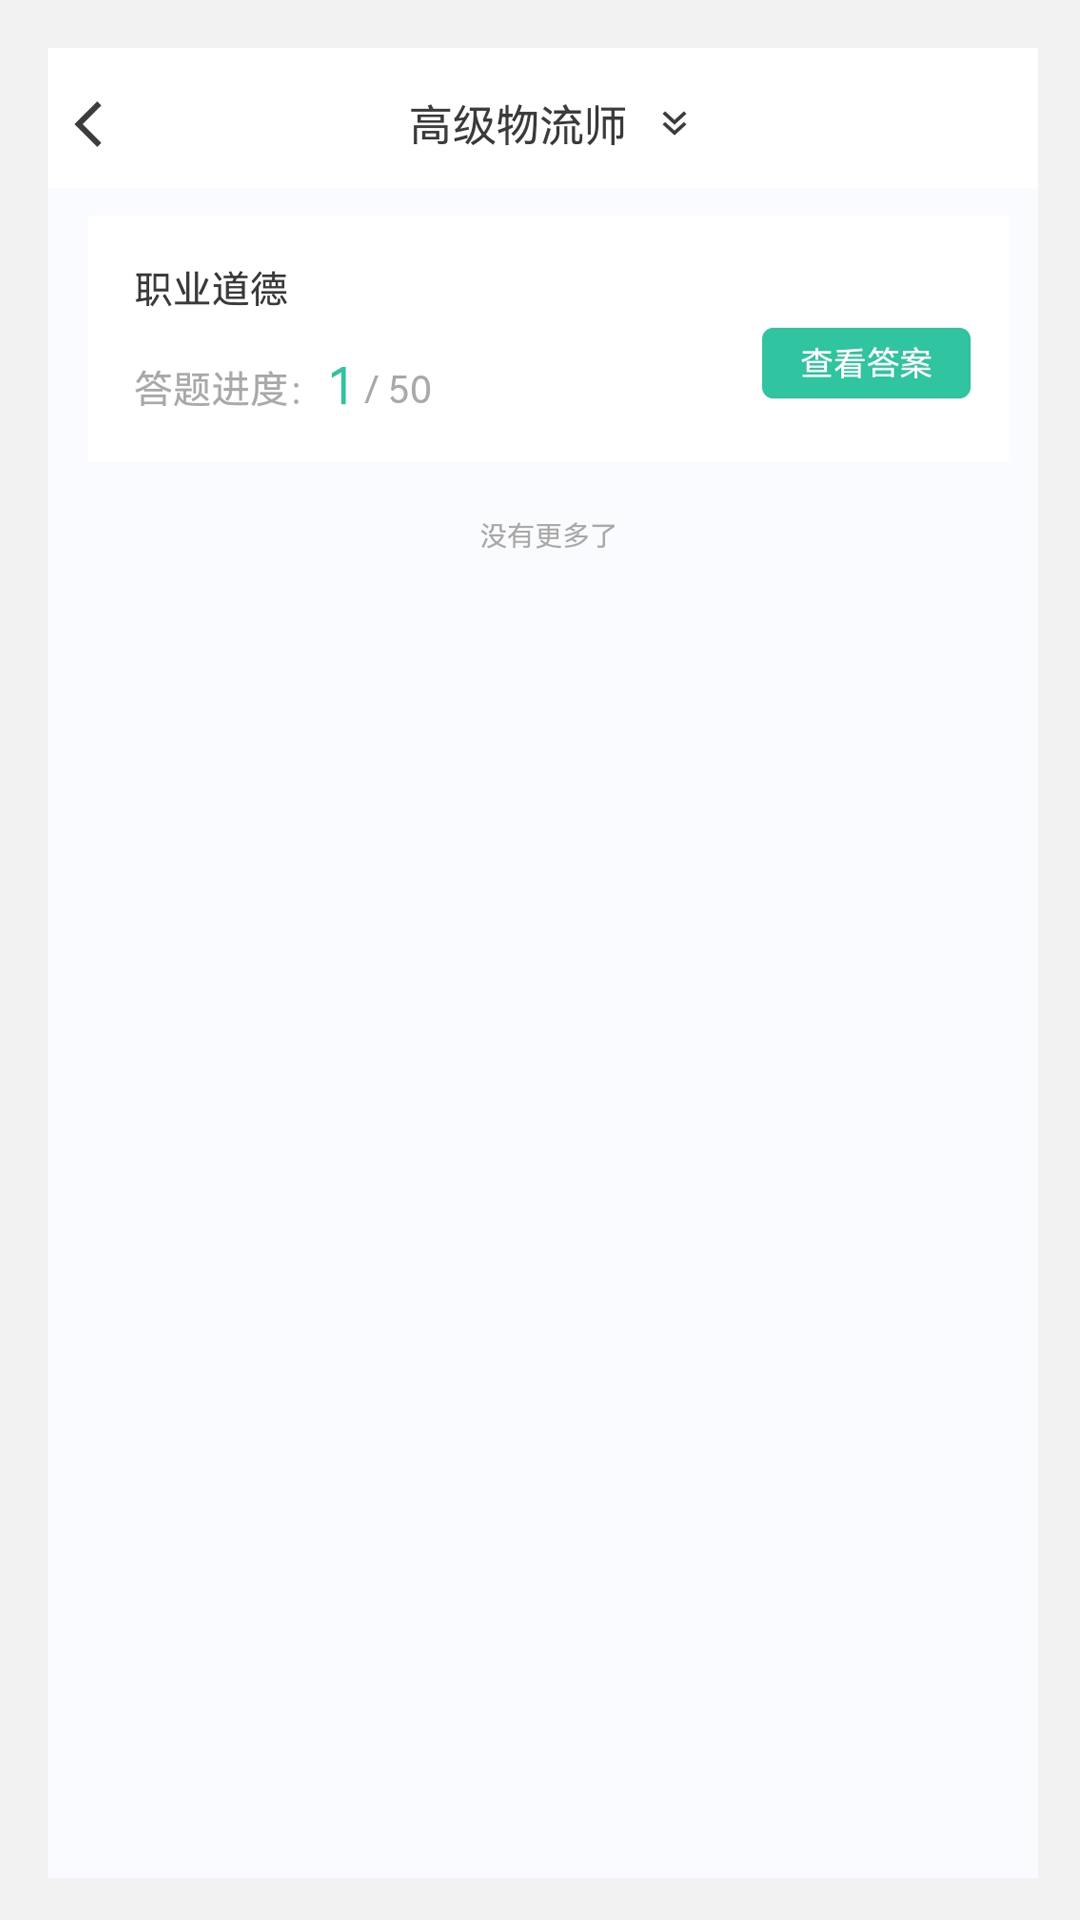 物流师100题库app官方版